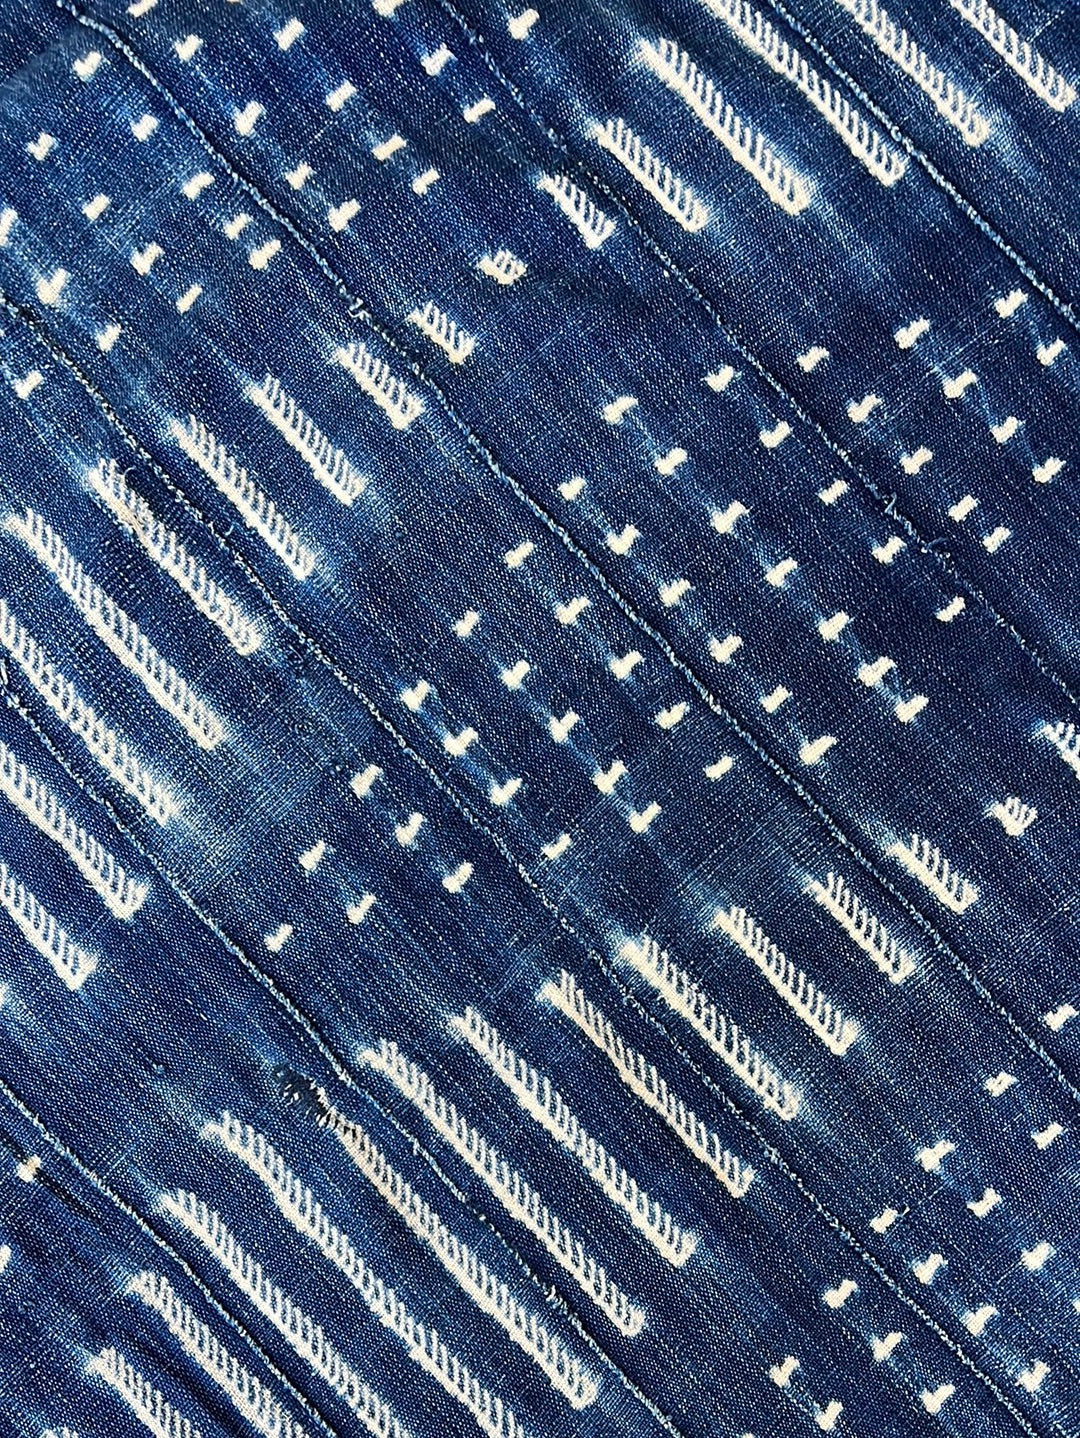 Vintage Indigo Textile - Diamond Pattern